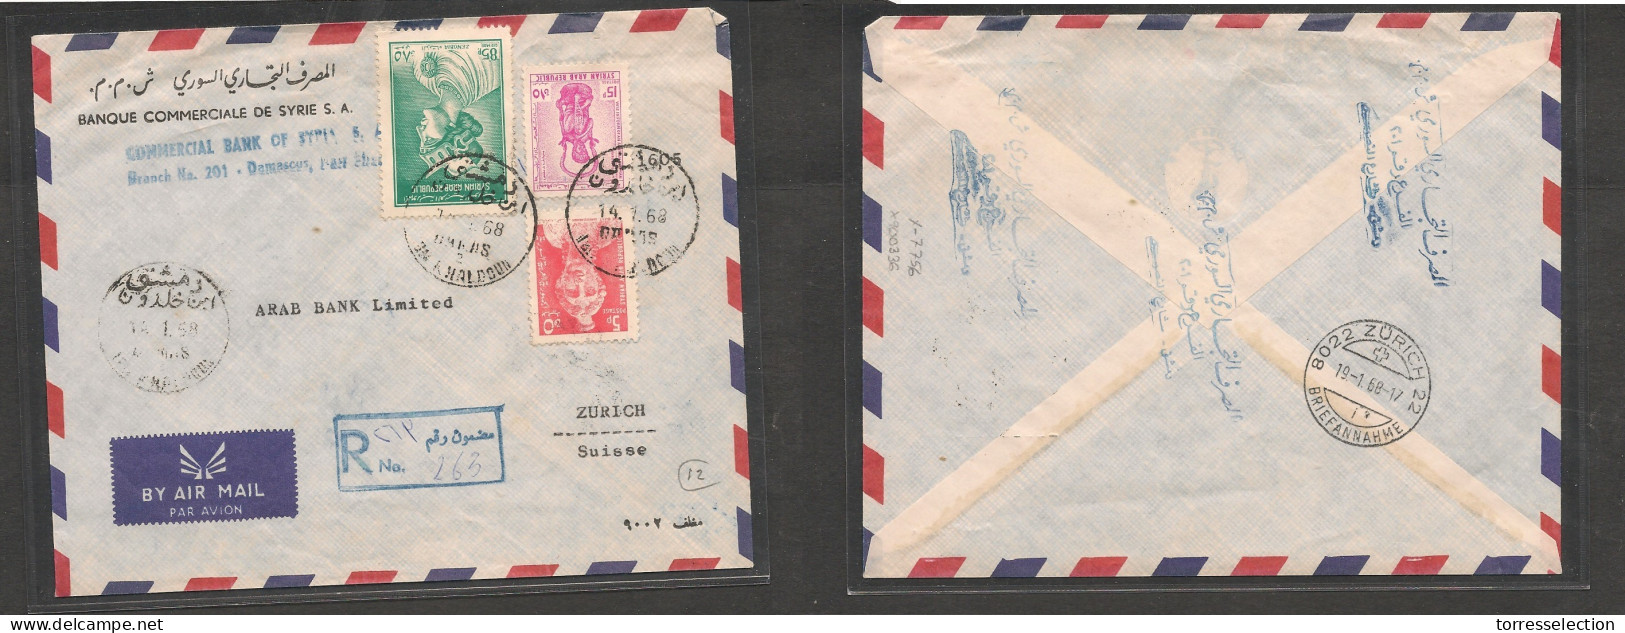 SYRIA. Syria Cover - 1968 Damascus To Switz Zurich Registr Air Mult Fkd Env Nah Khaldoun, Vf XSALE. - Syrië